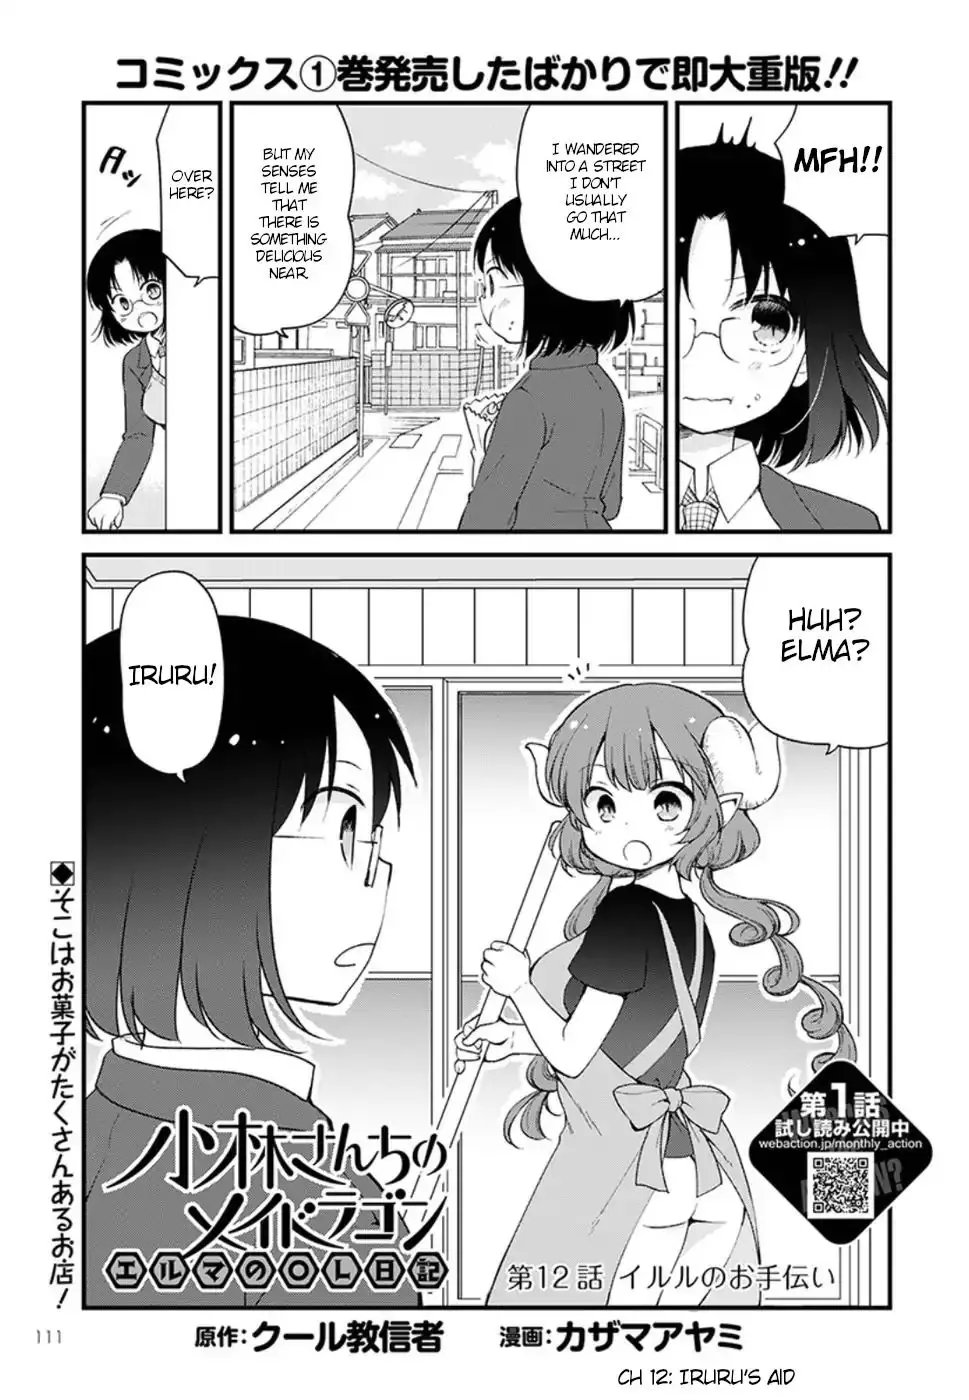 Kobayashi-San Chi No Maid Dragon: Elma Ol Nikki - 12 page 1